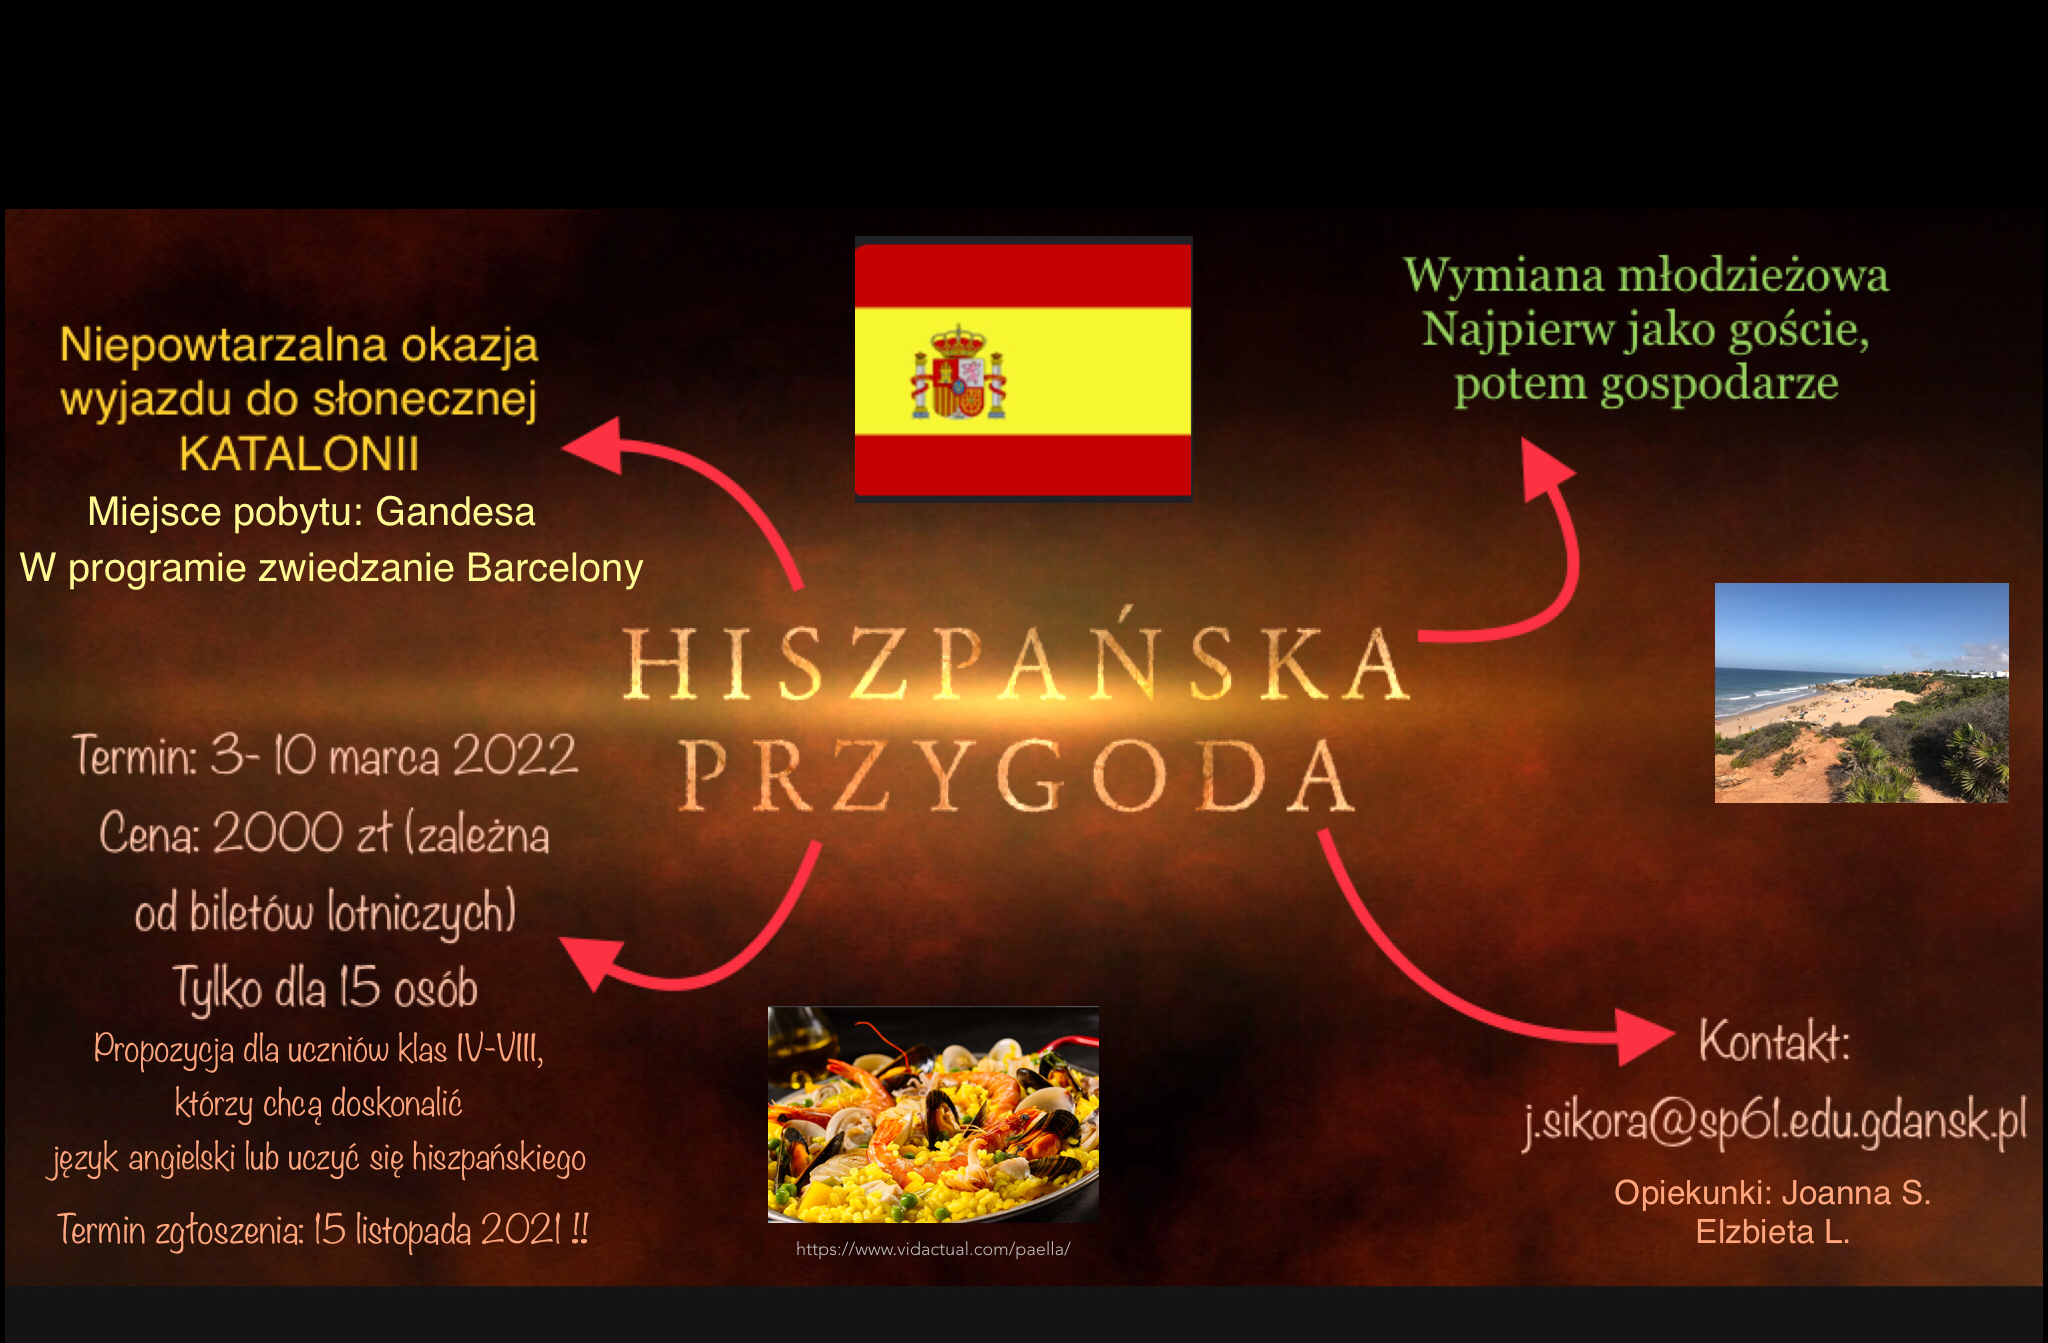 Obraz przedstawia plakat informujący o wyjeździe do Hiszpanii - słonecznej Katalonii. Wylot odbędzie się 3 marca, a przylot 10 marca 2022 r. Jest to wymiana uczniów hiszpańskich i polskich.